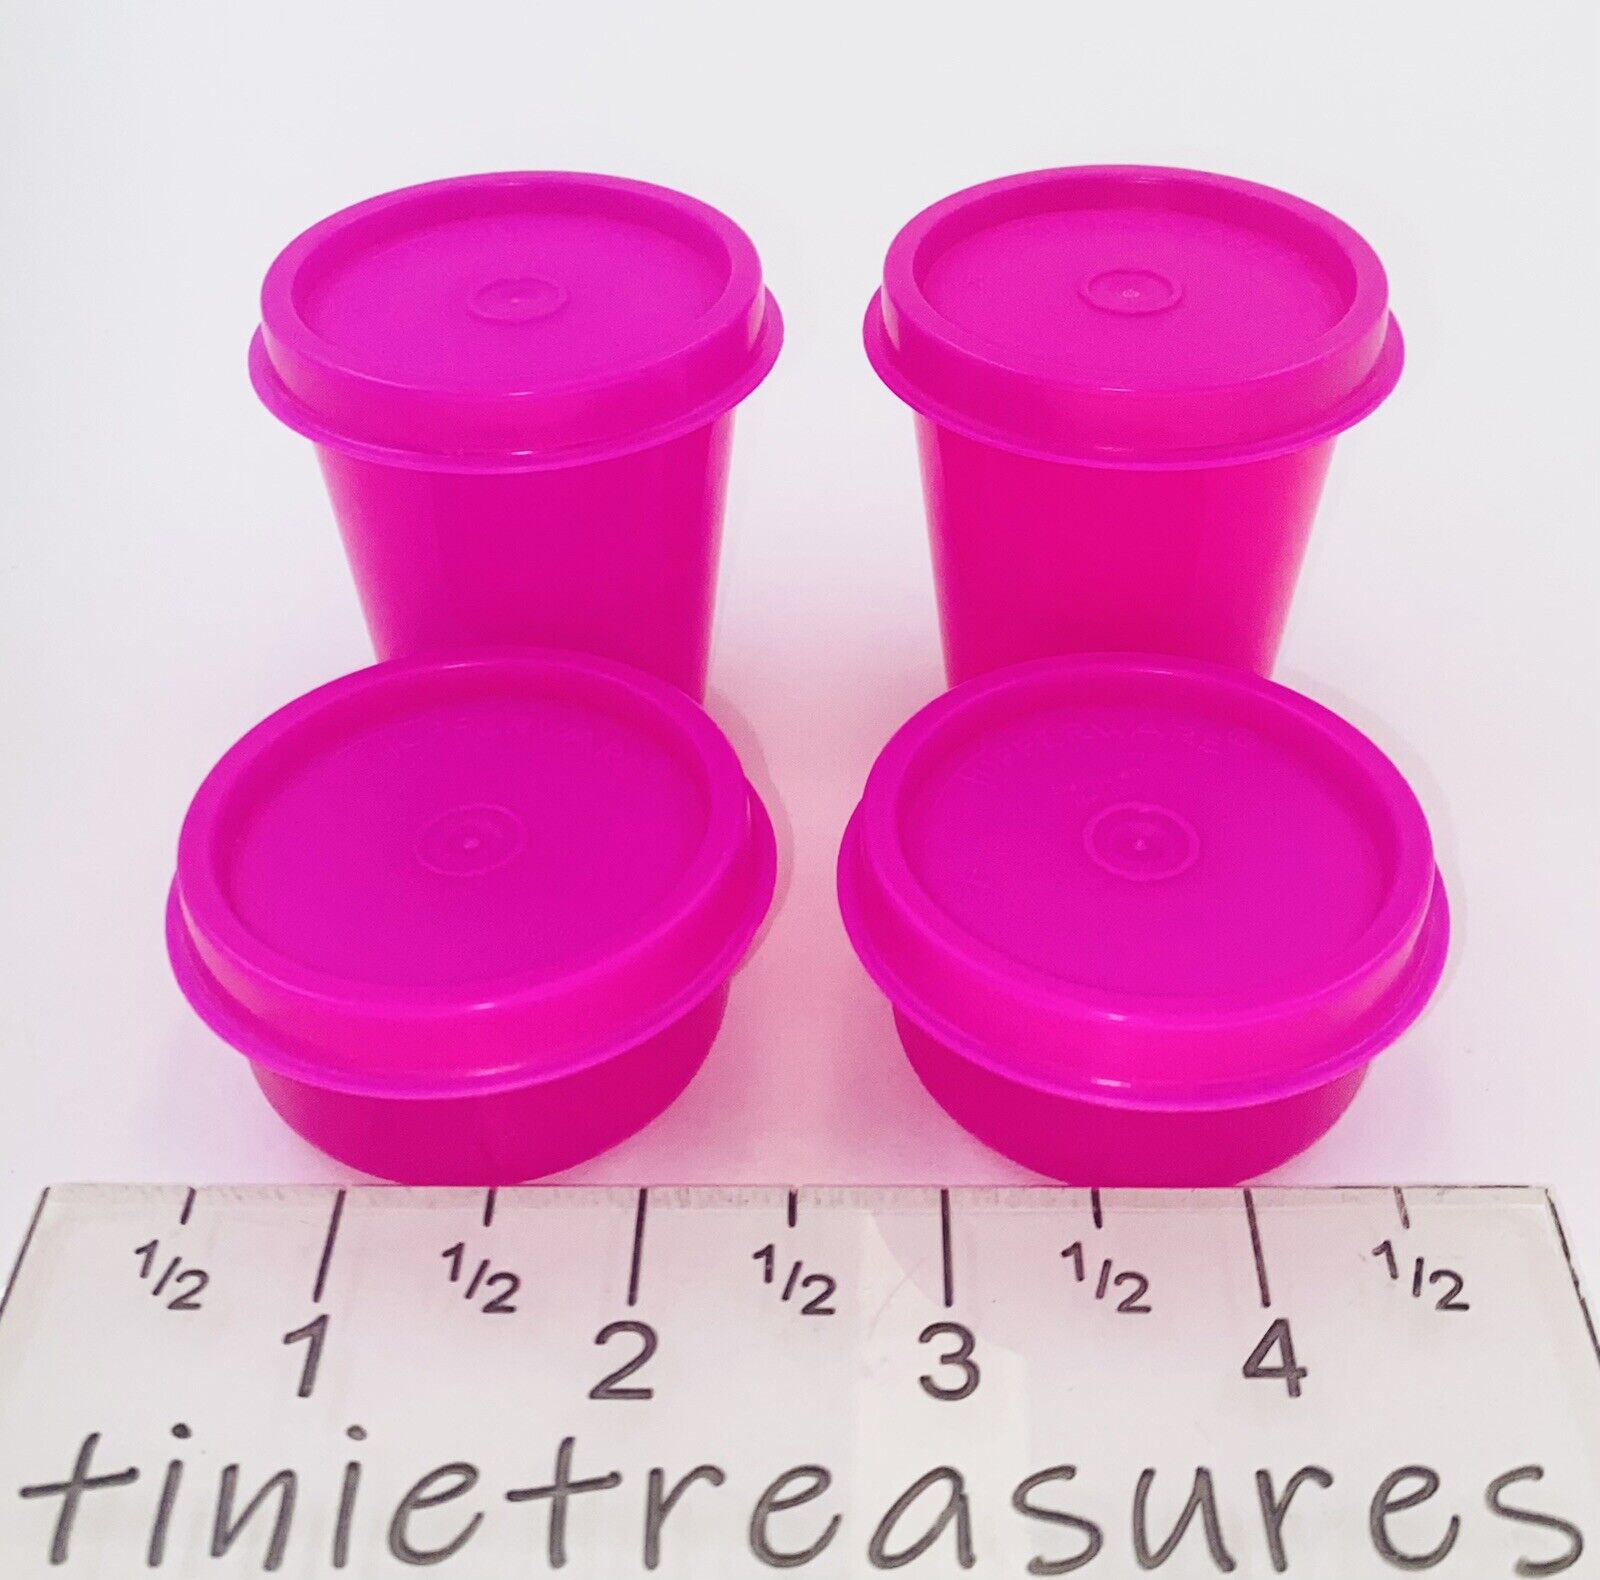 Tupperware Smidget/midget Set of 4 Neon pink tinietreasures